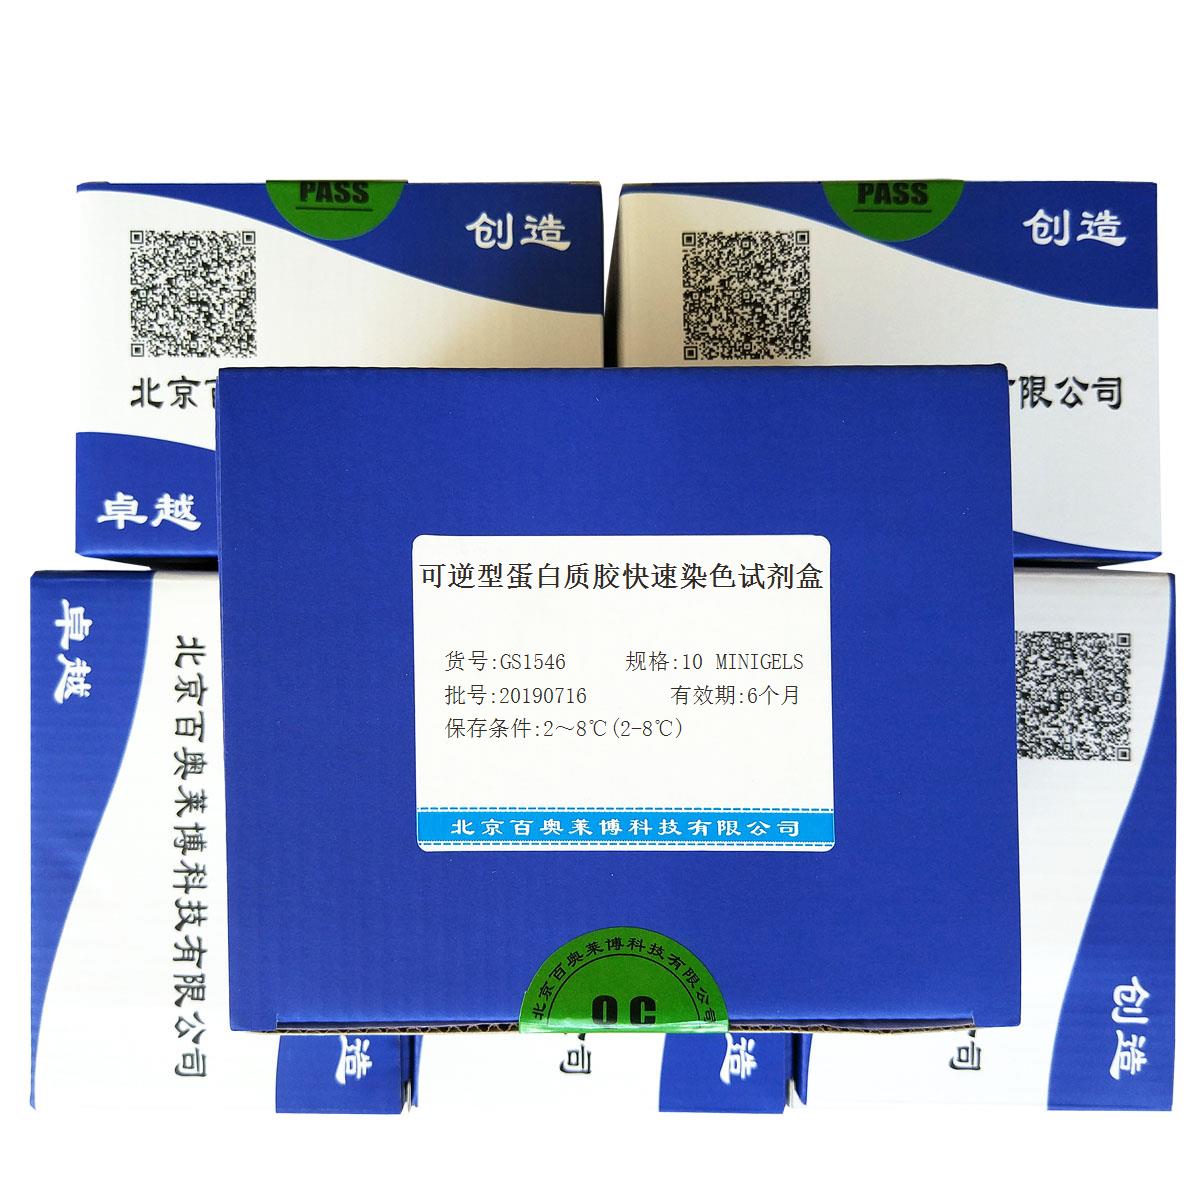 可逆型蛋白质胶快速染色试剂盒北京品牌